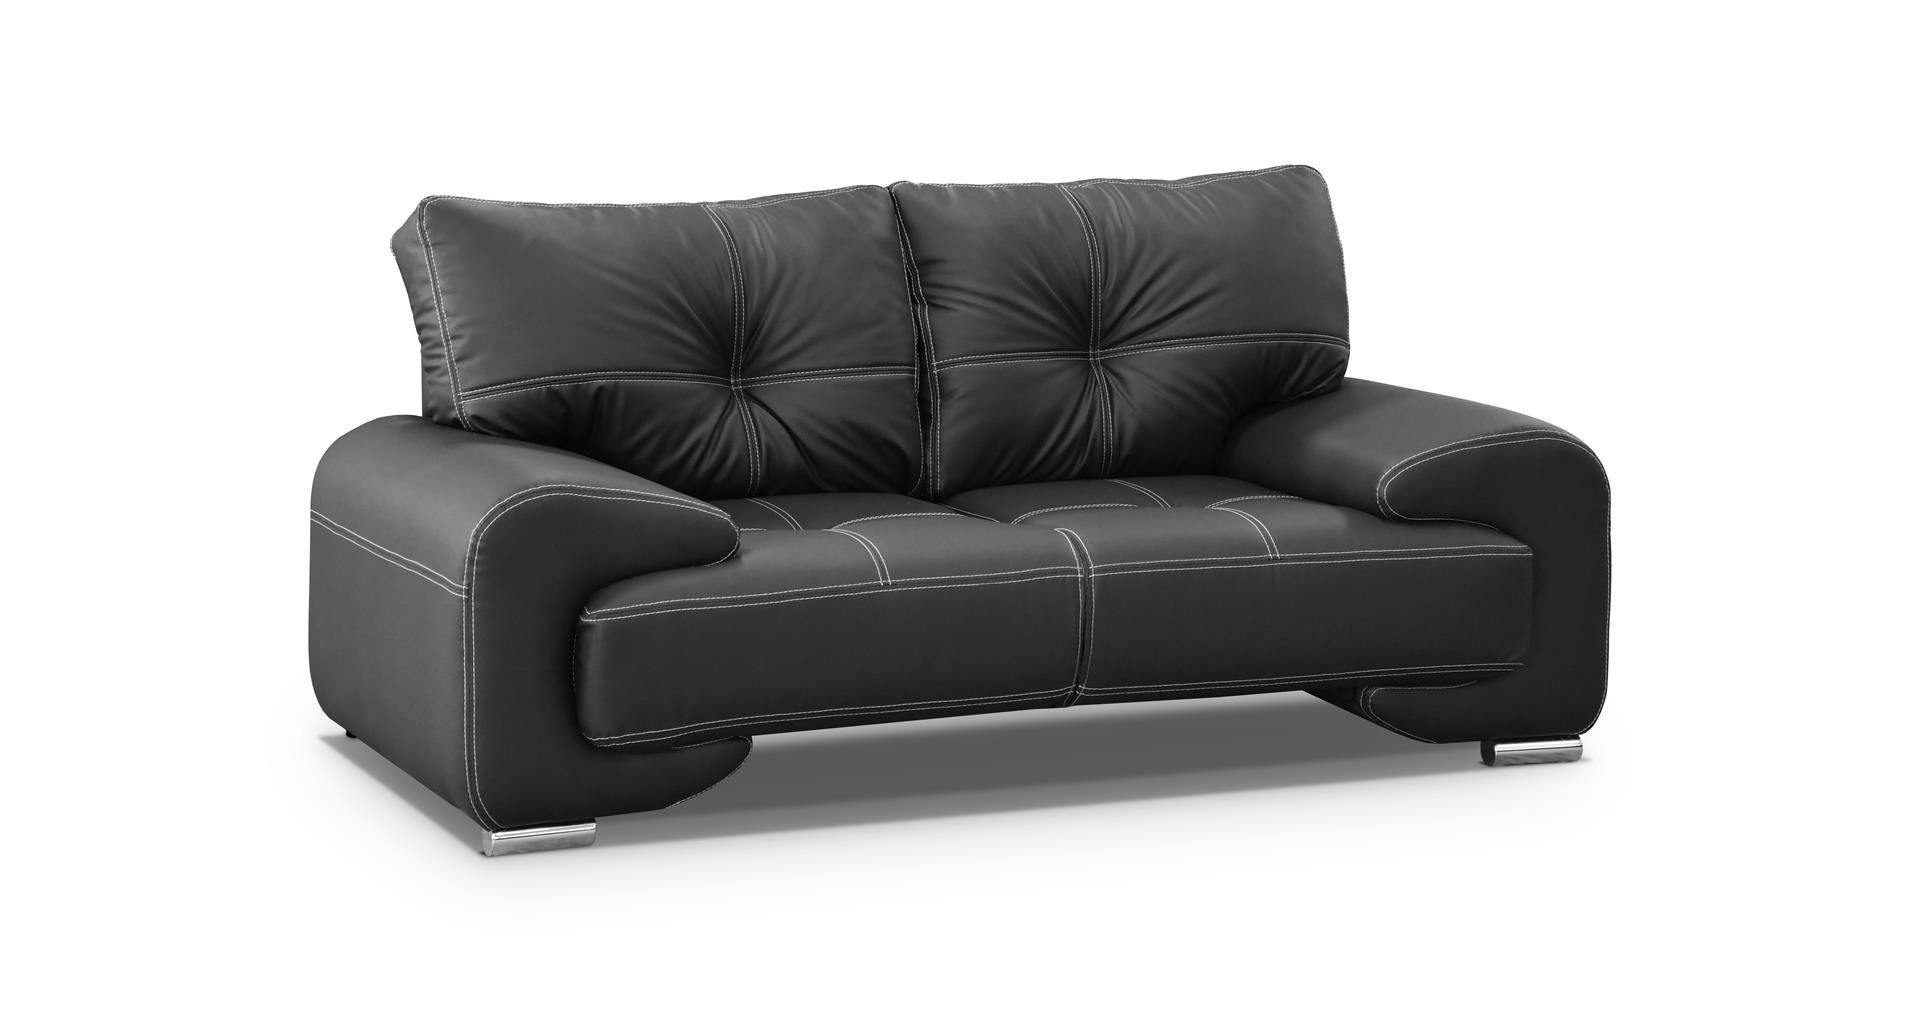 Beautysofa 2-Sitzer Zweisitzer Sofa Couch OMEGA Neu Schwarz (dolaro 08)